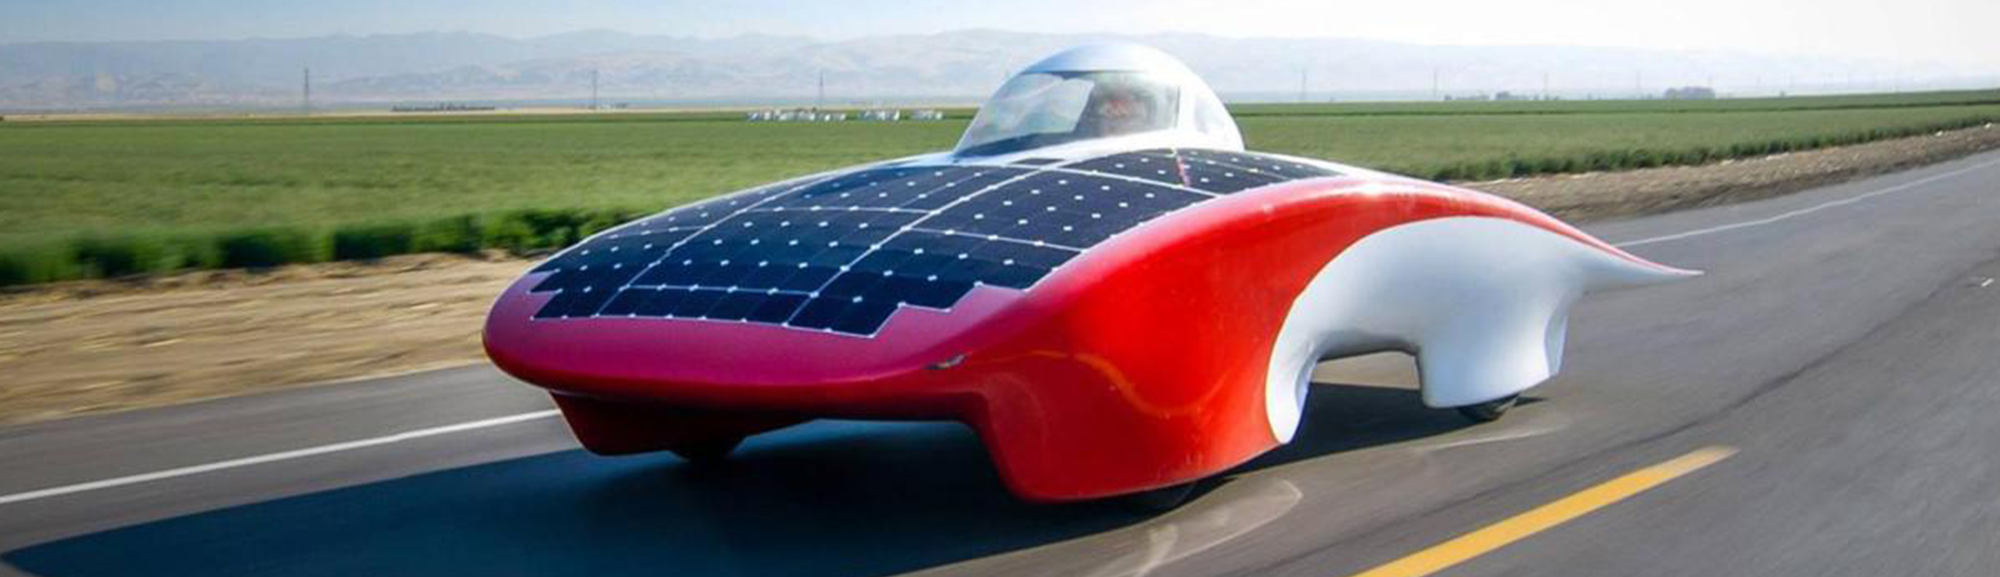 Standford_solar_car